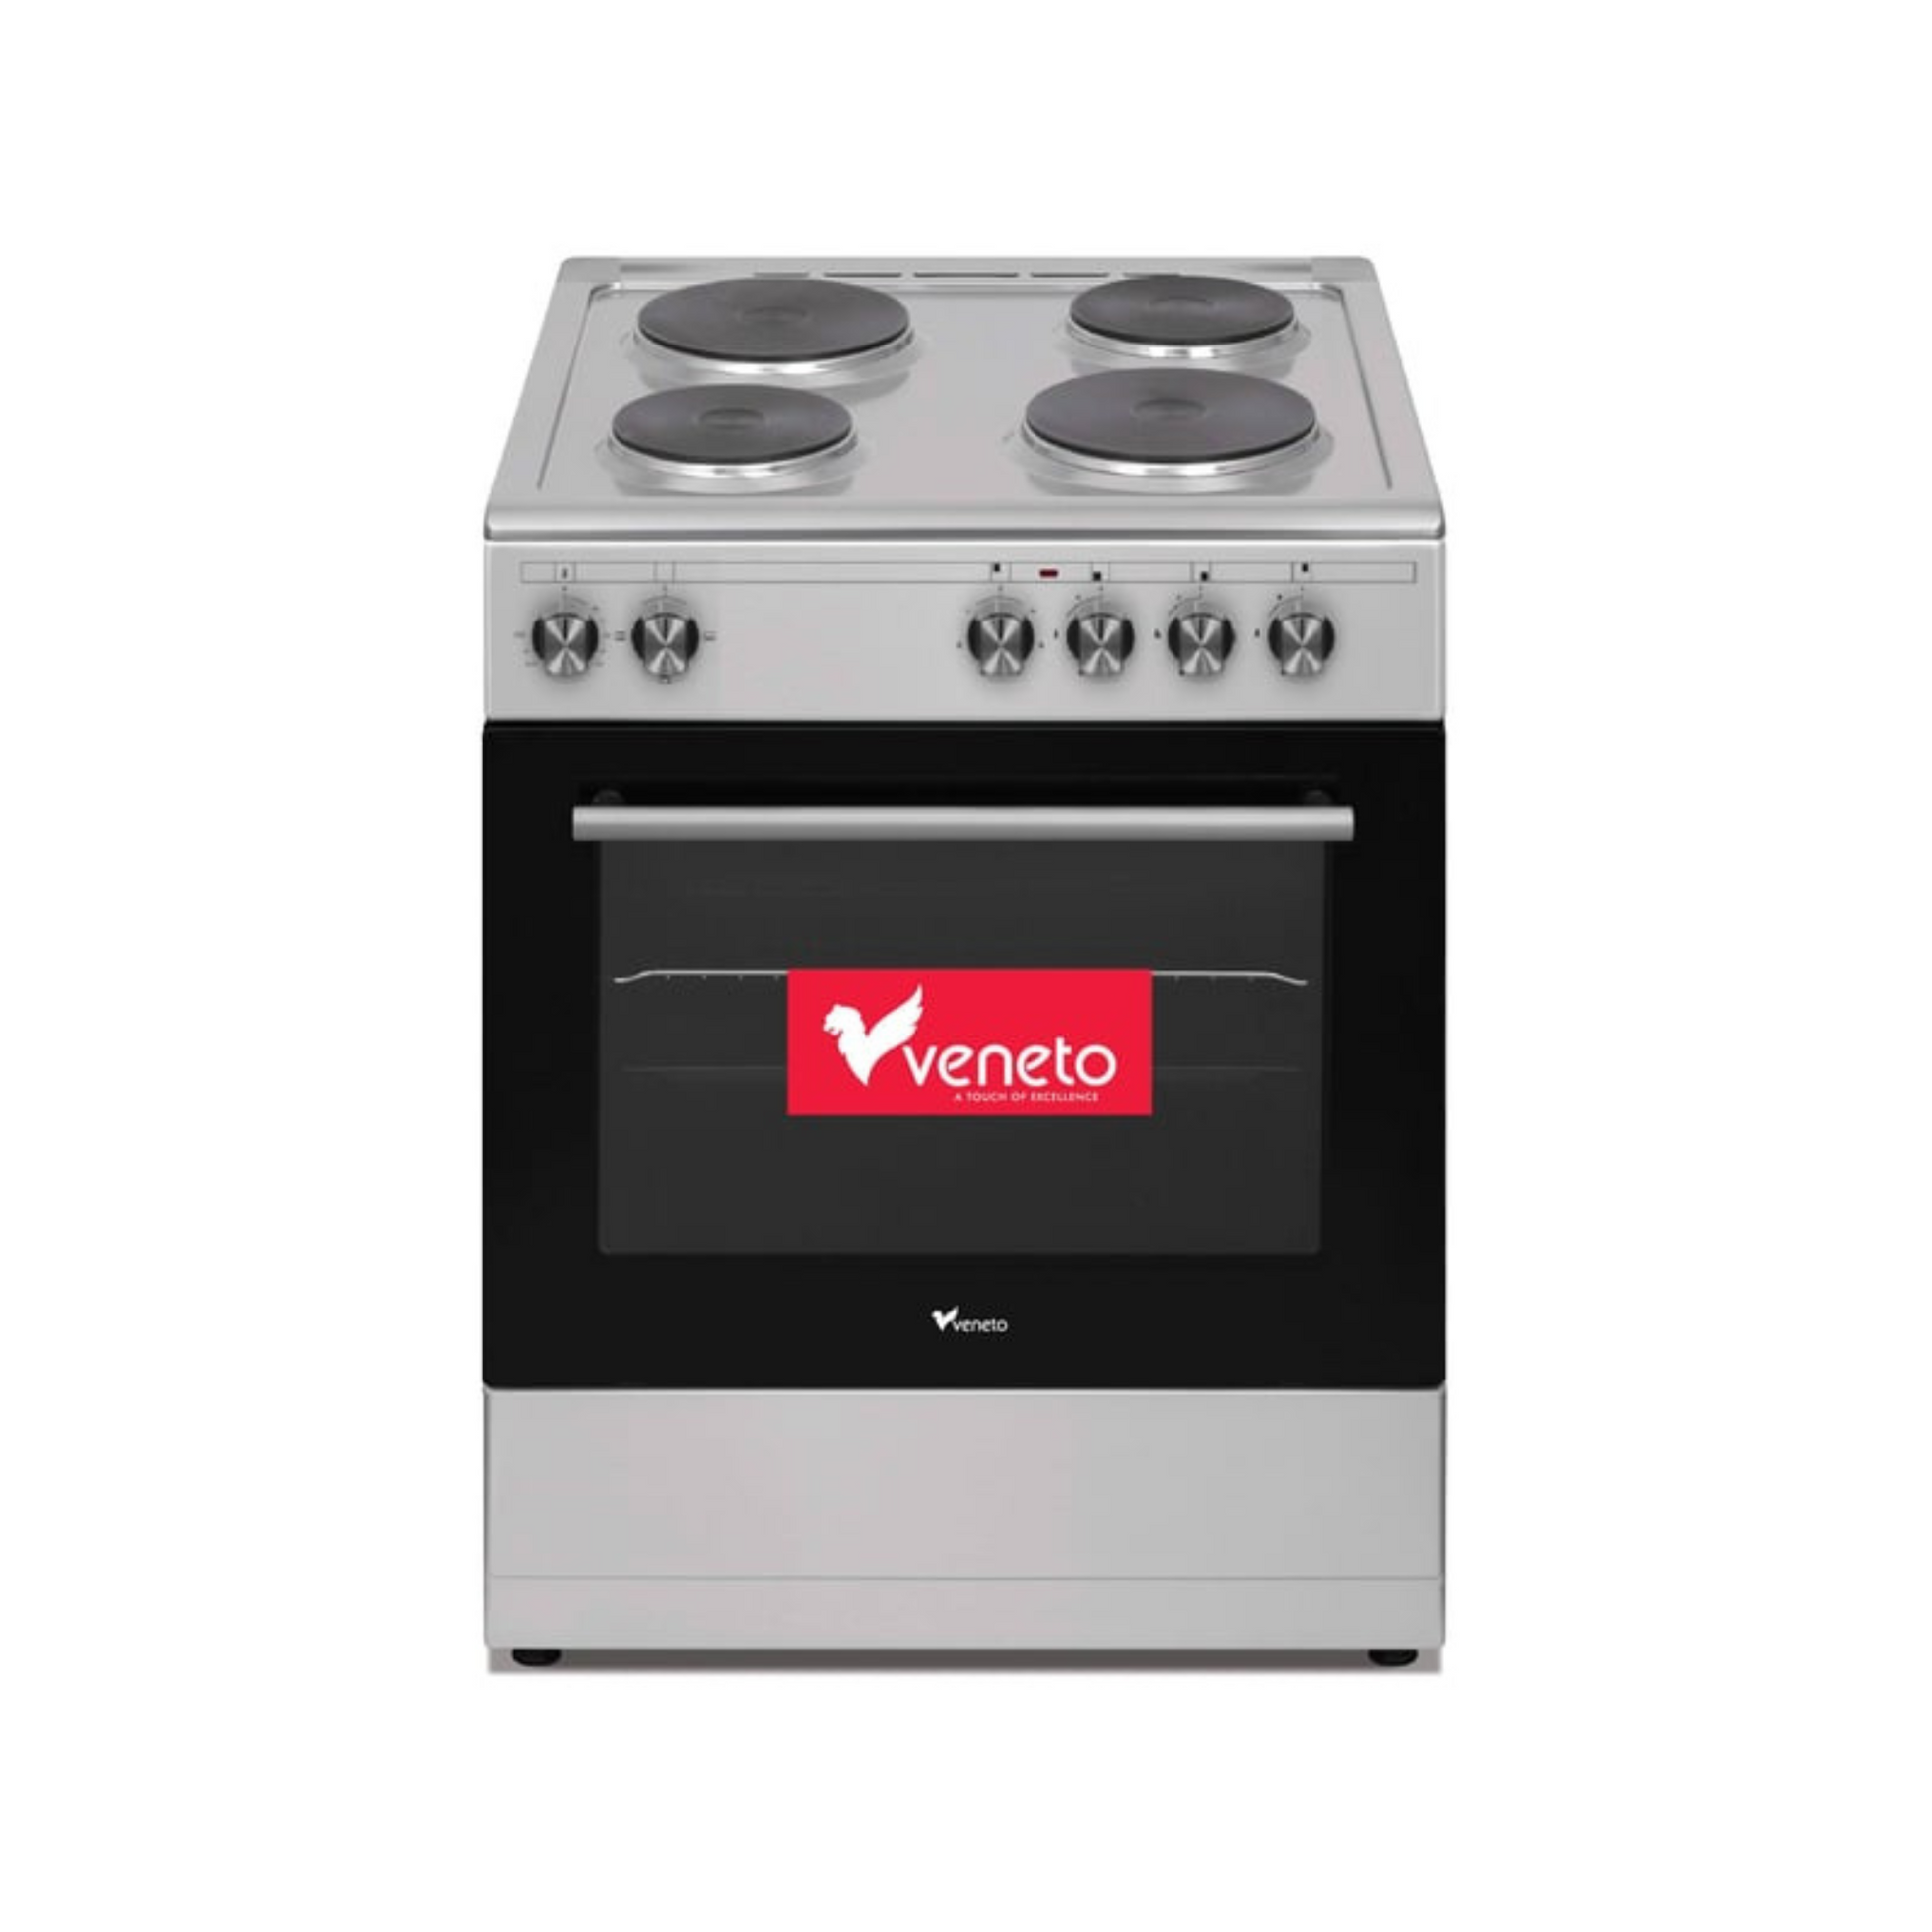 Veneto 60X60 Electric Cooking Range, L660SX